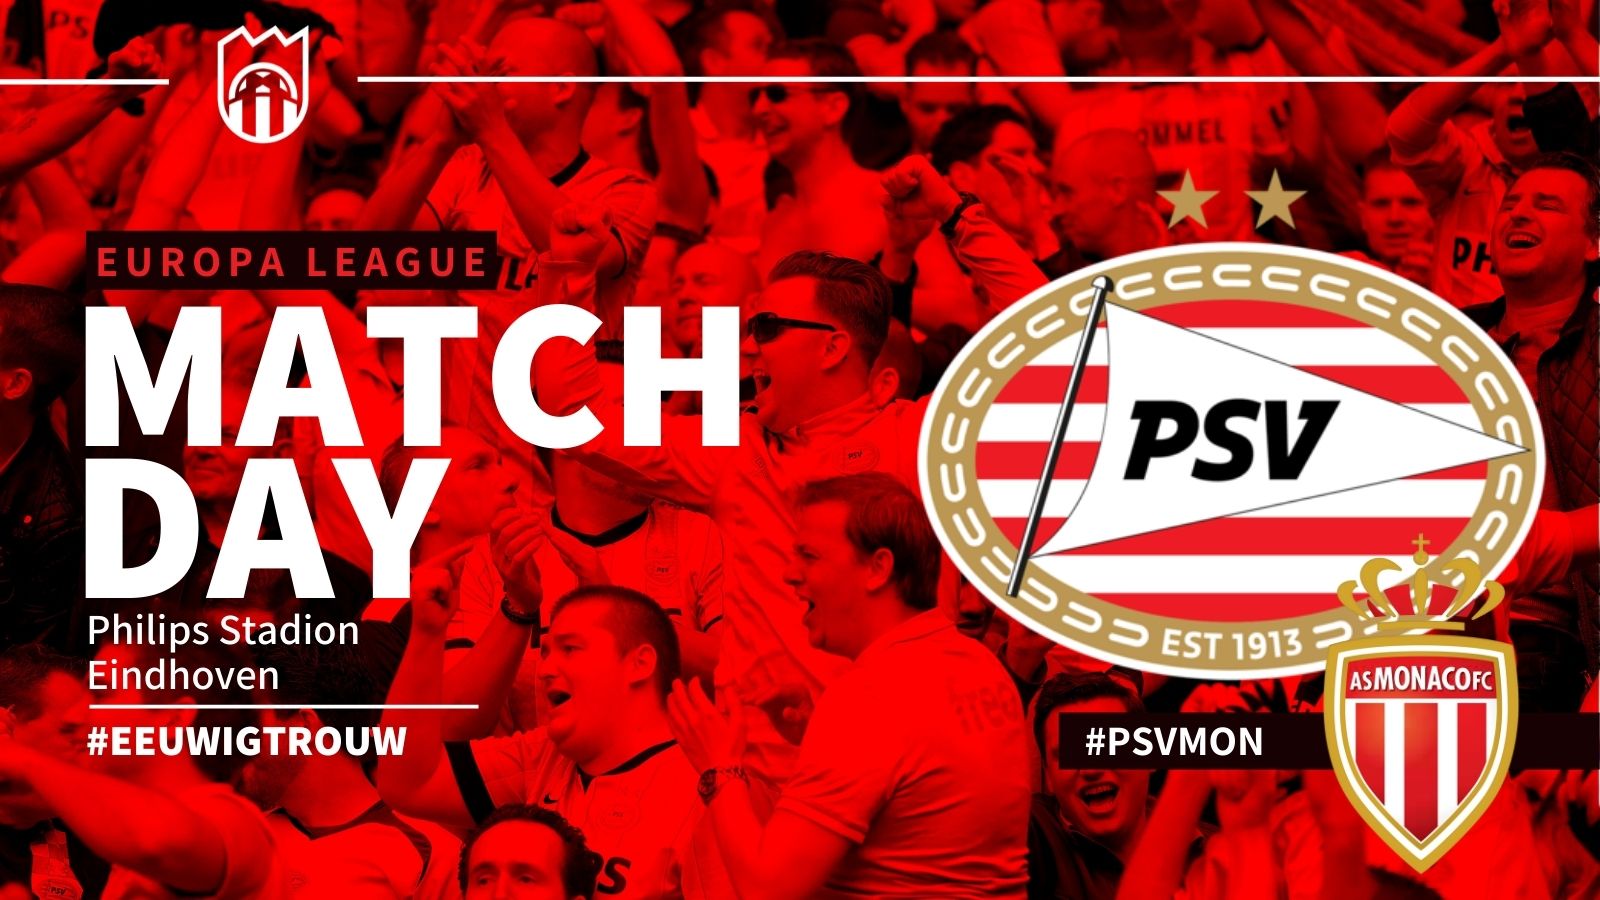 Europa League : PSV - AS Monaco (1 - 2)